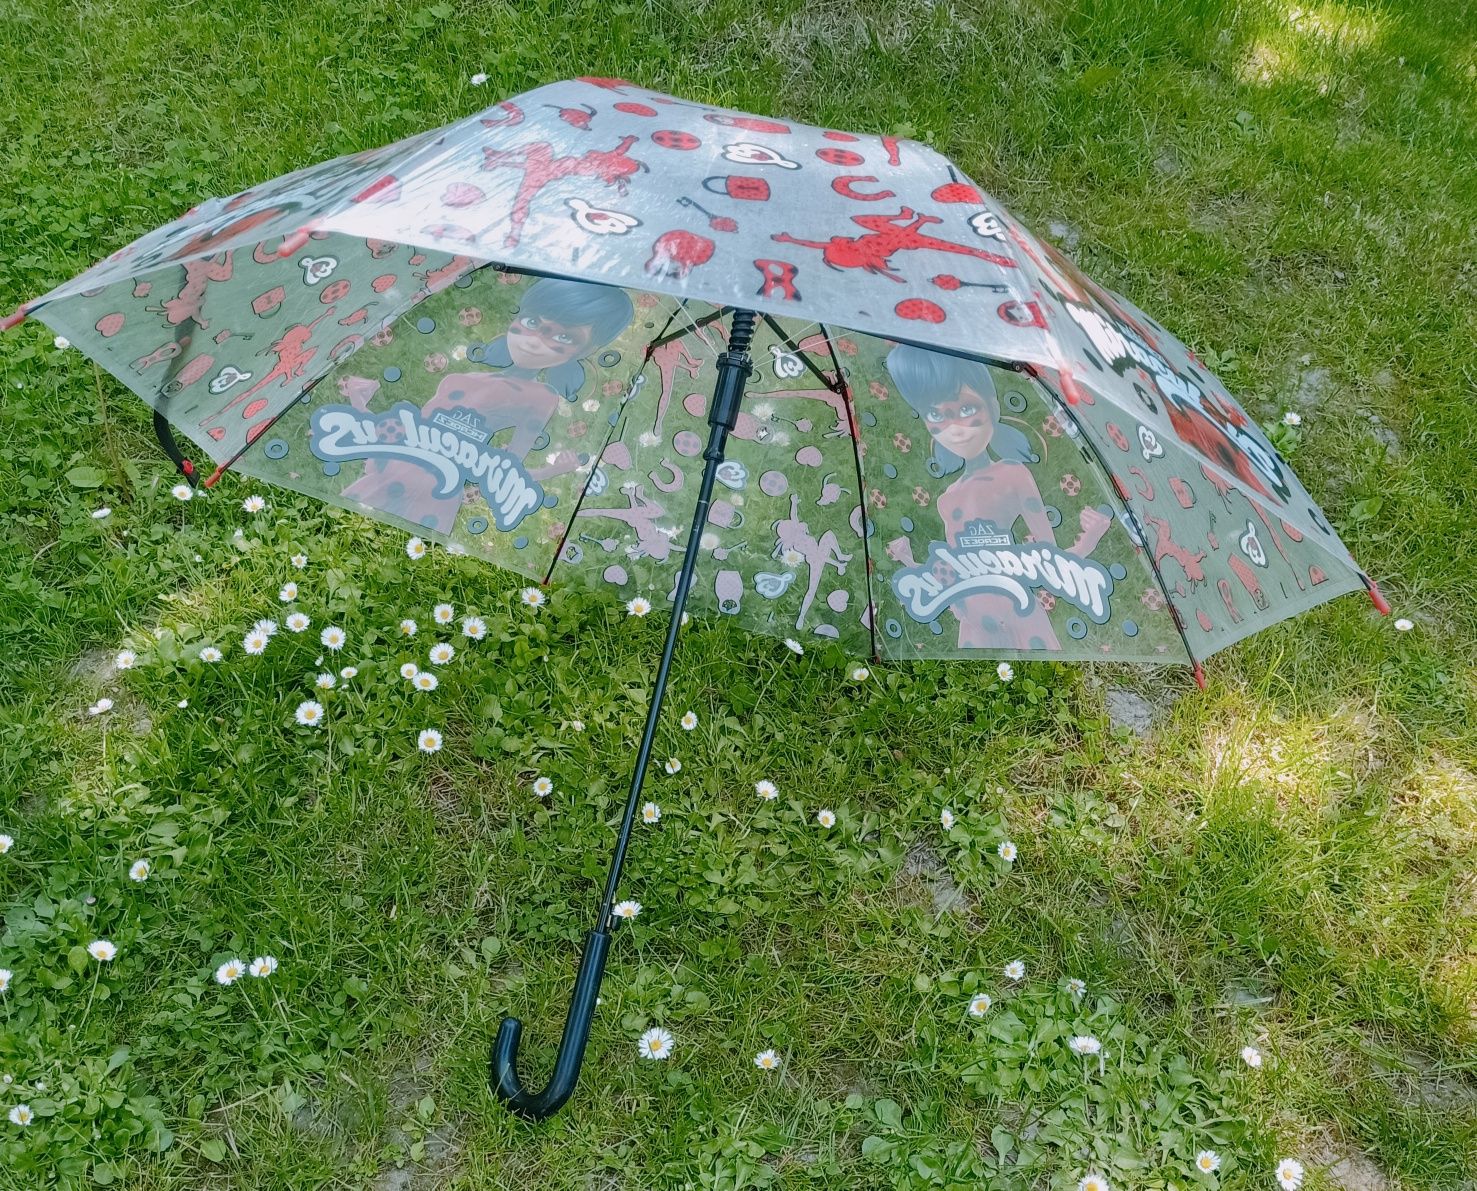 Parasol parasolka dziecięce biedronka i czarny kot l